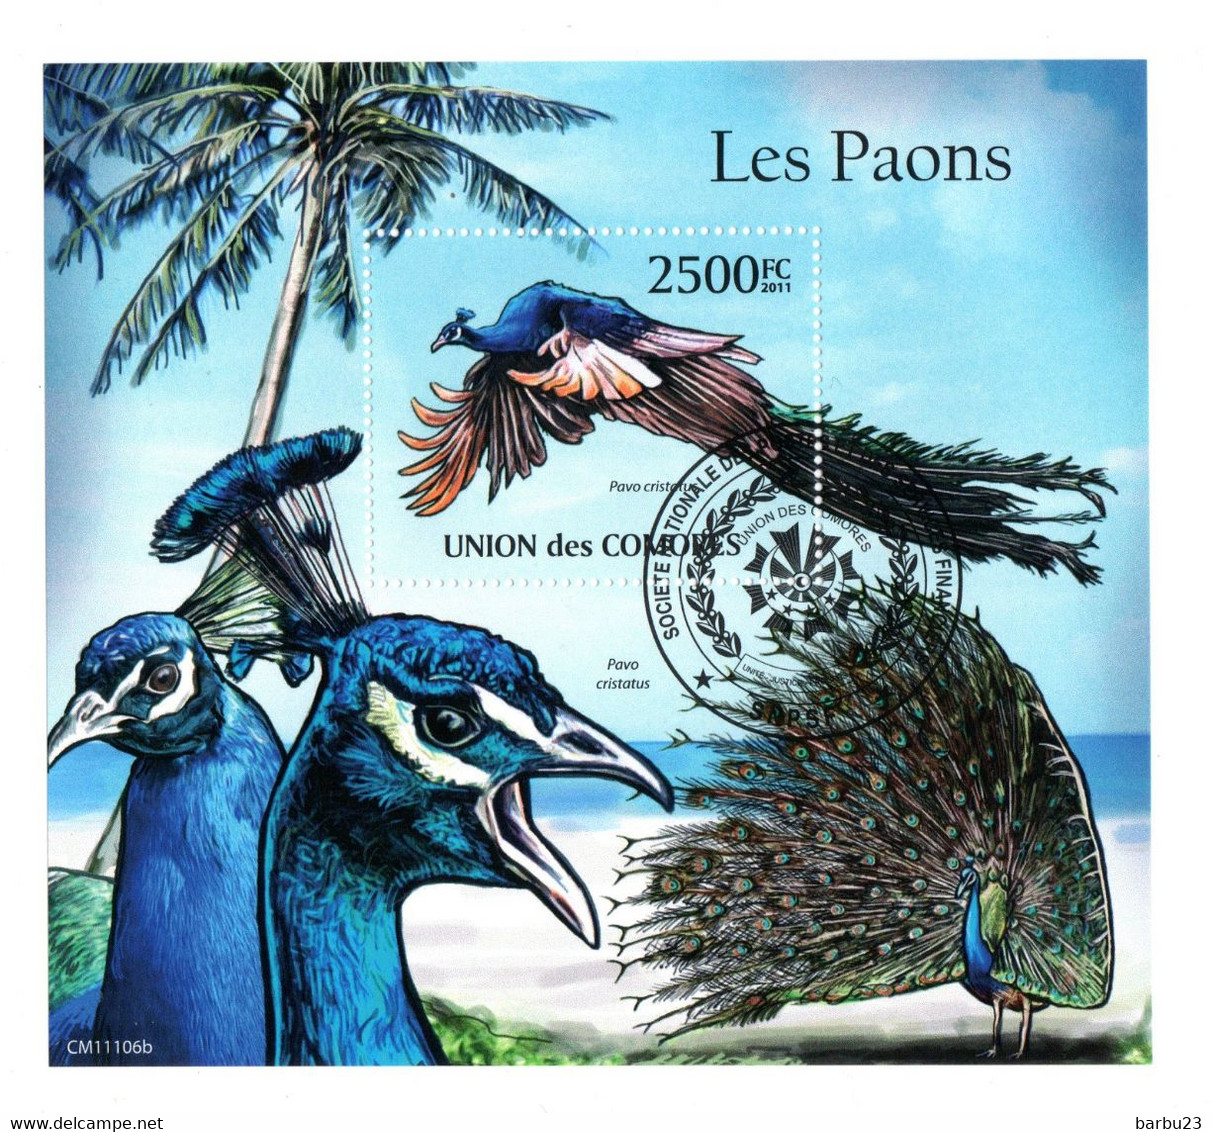 Les Paons Bloc De L'Union Des Comores - Peacocks